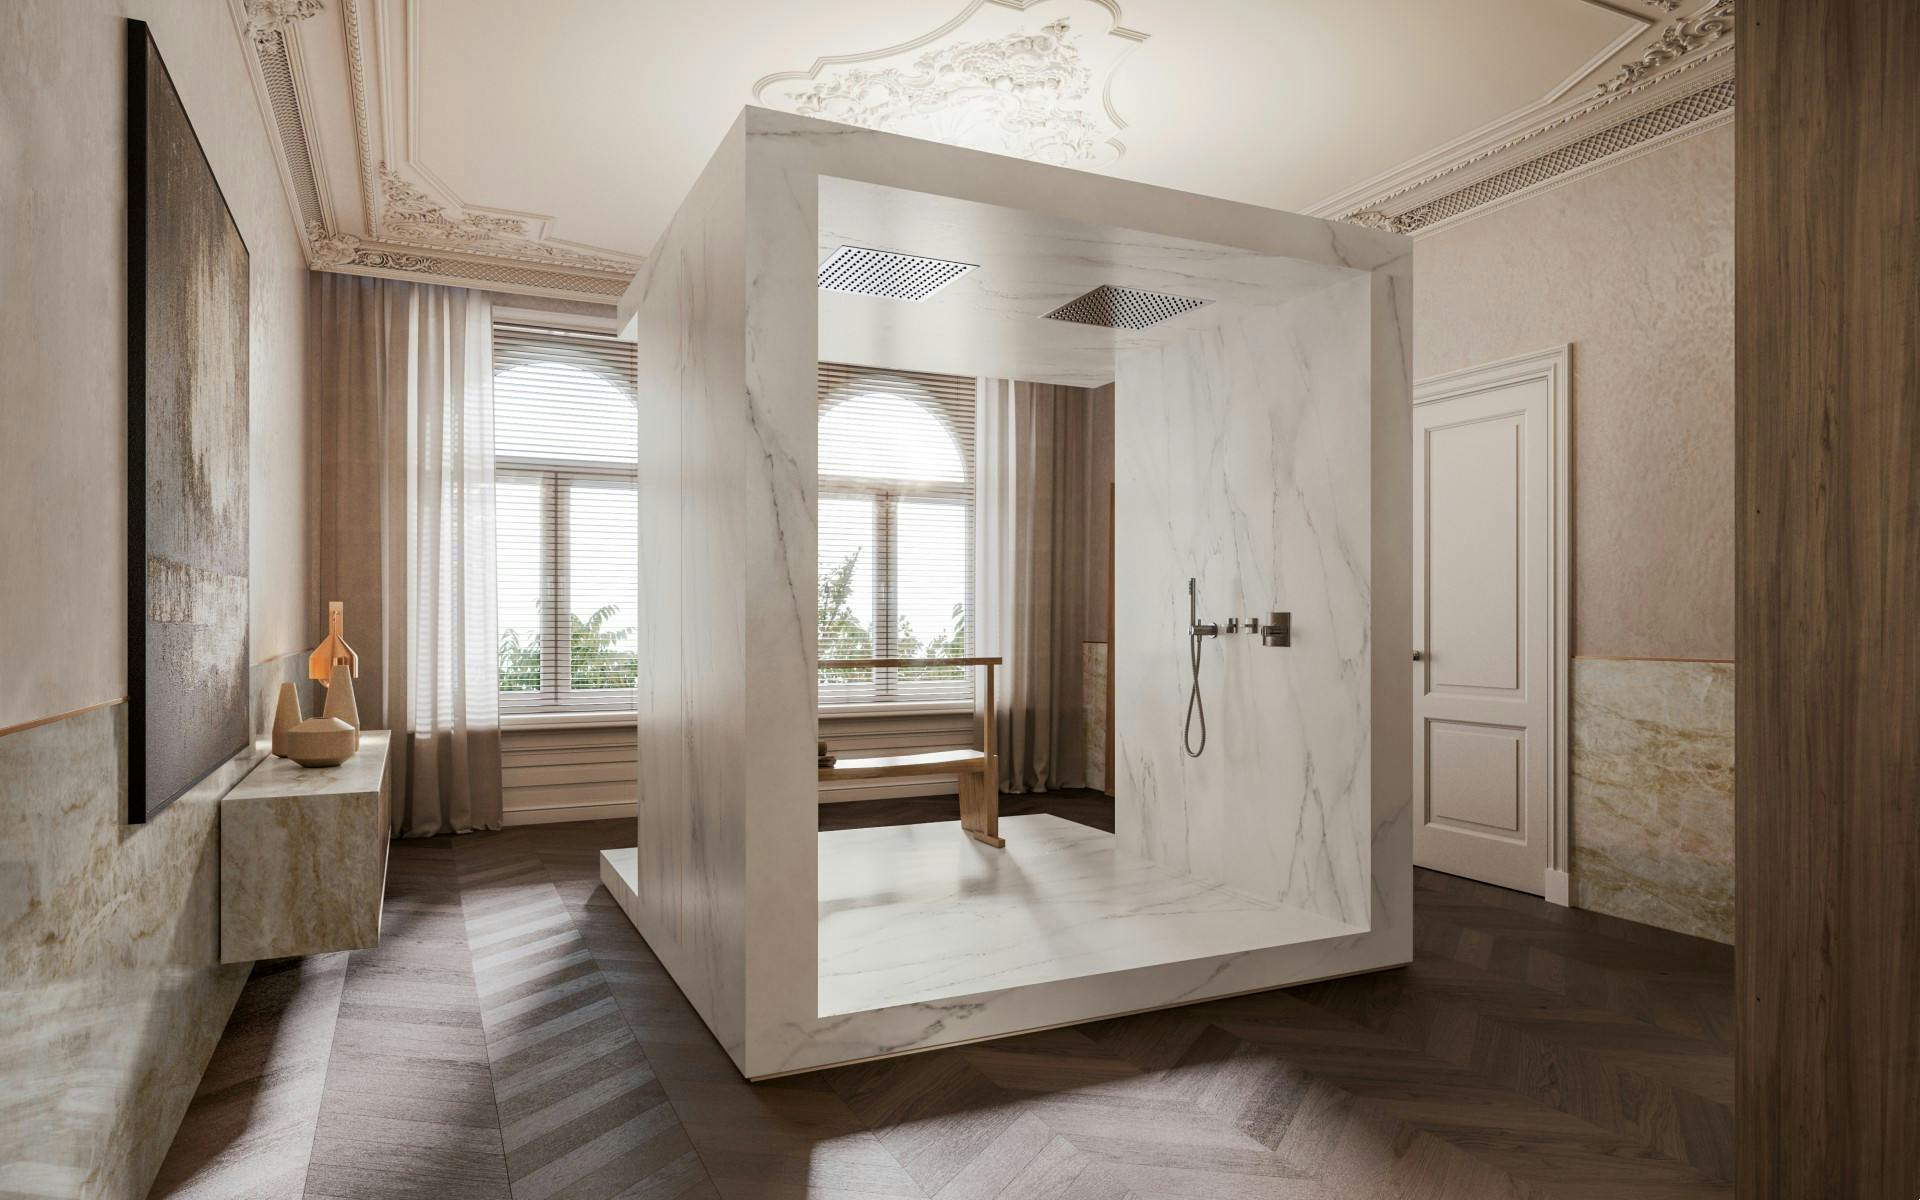 Bildnummer 32 des aktuellen Abschnitts von {{The perfect bathroom according to Remy Meijers}} von Cosentino Österreich